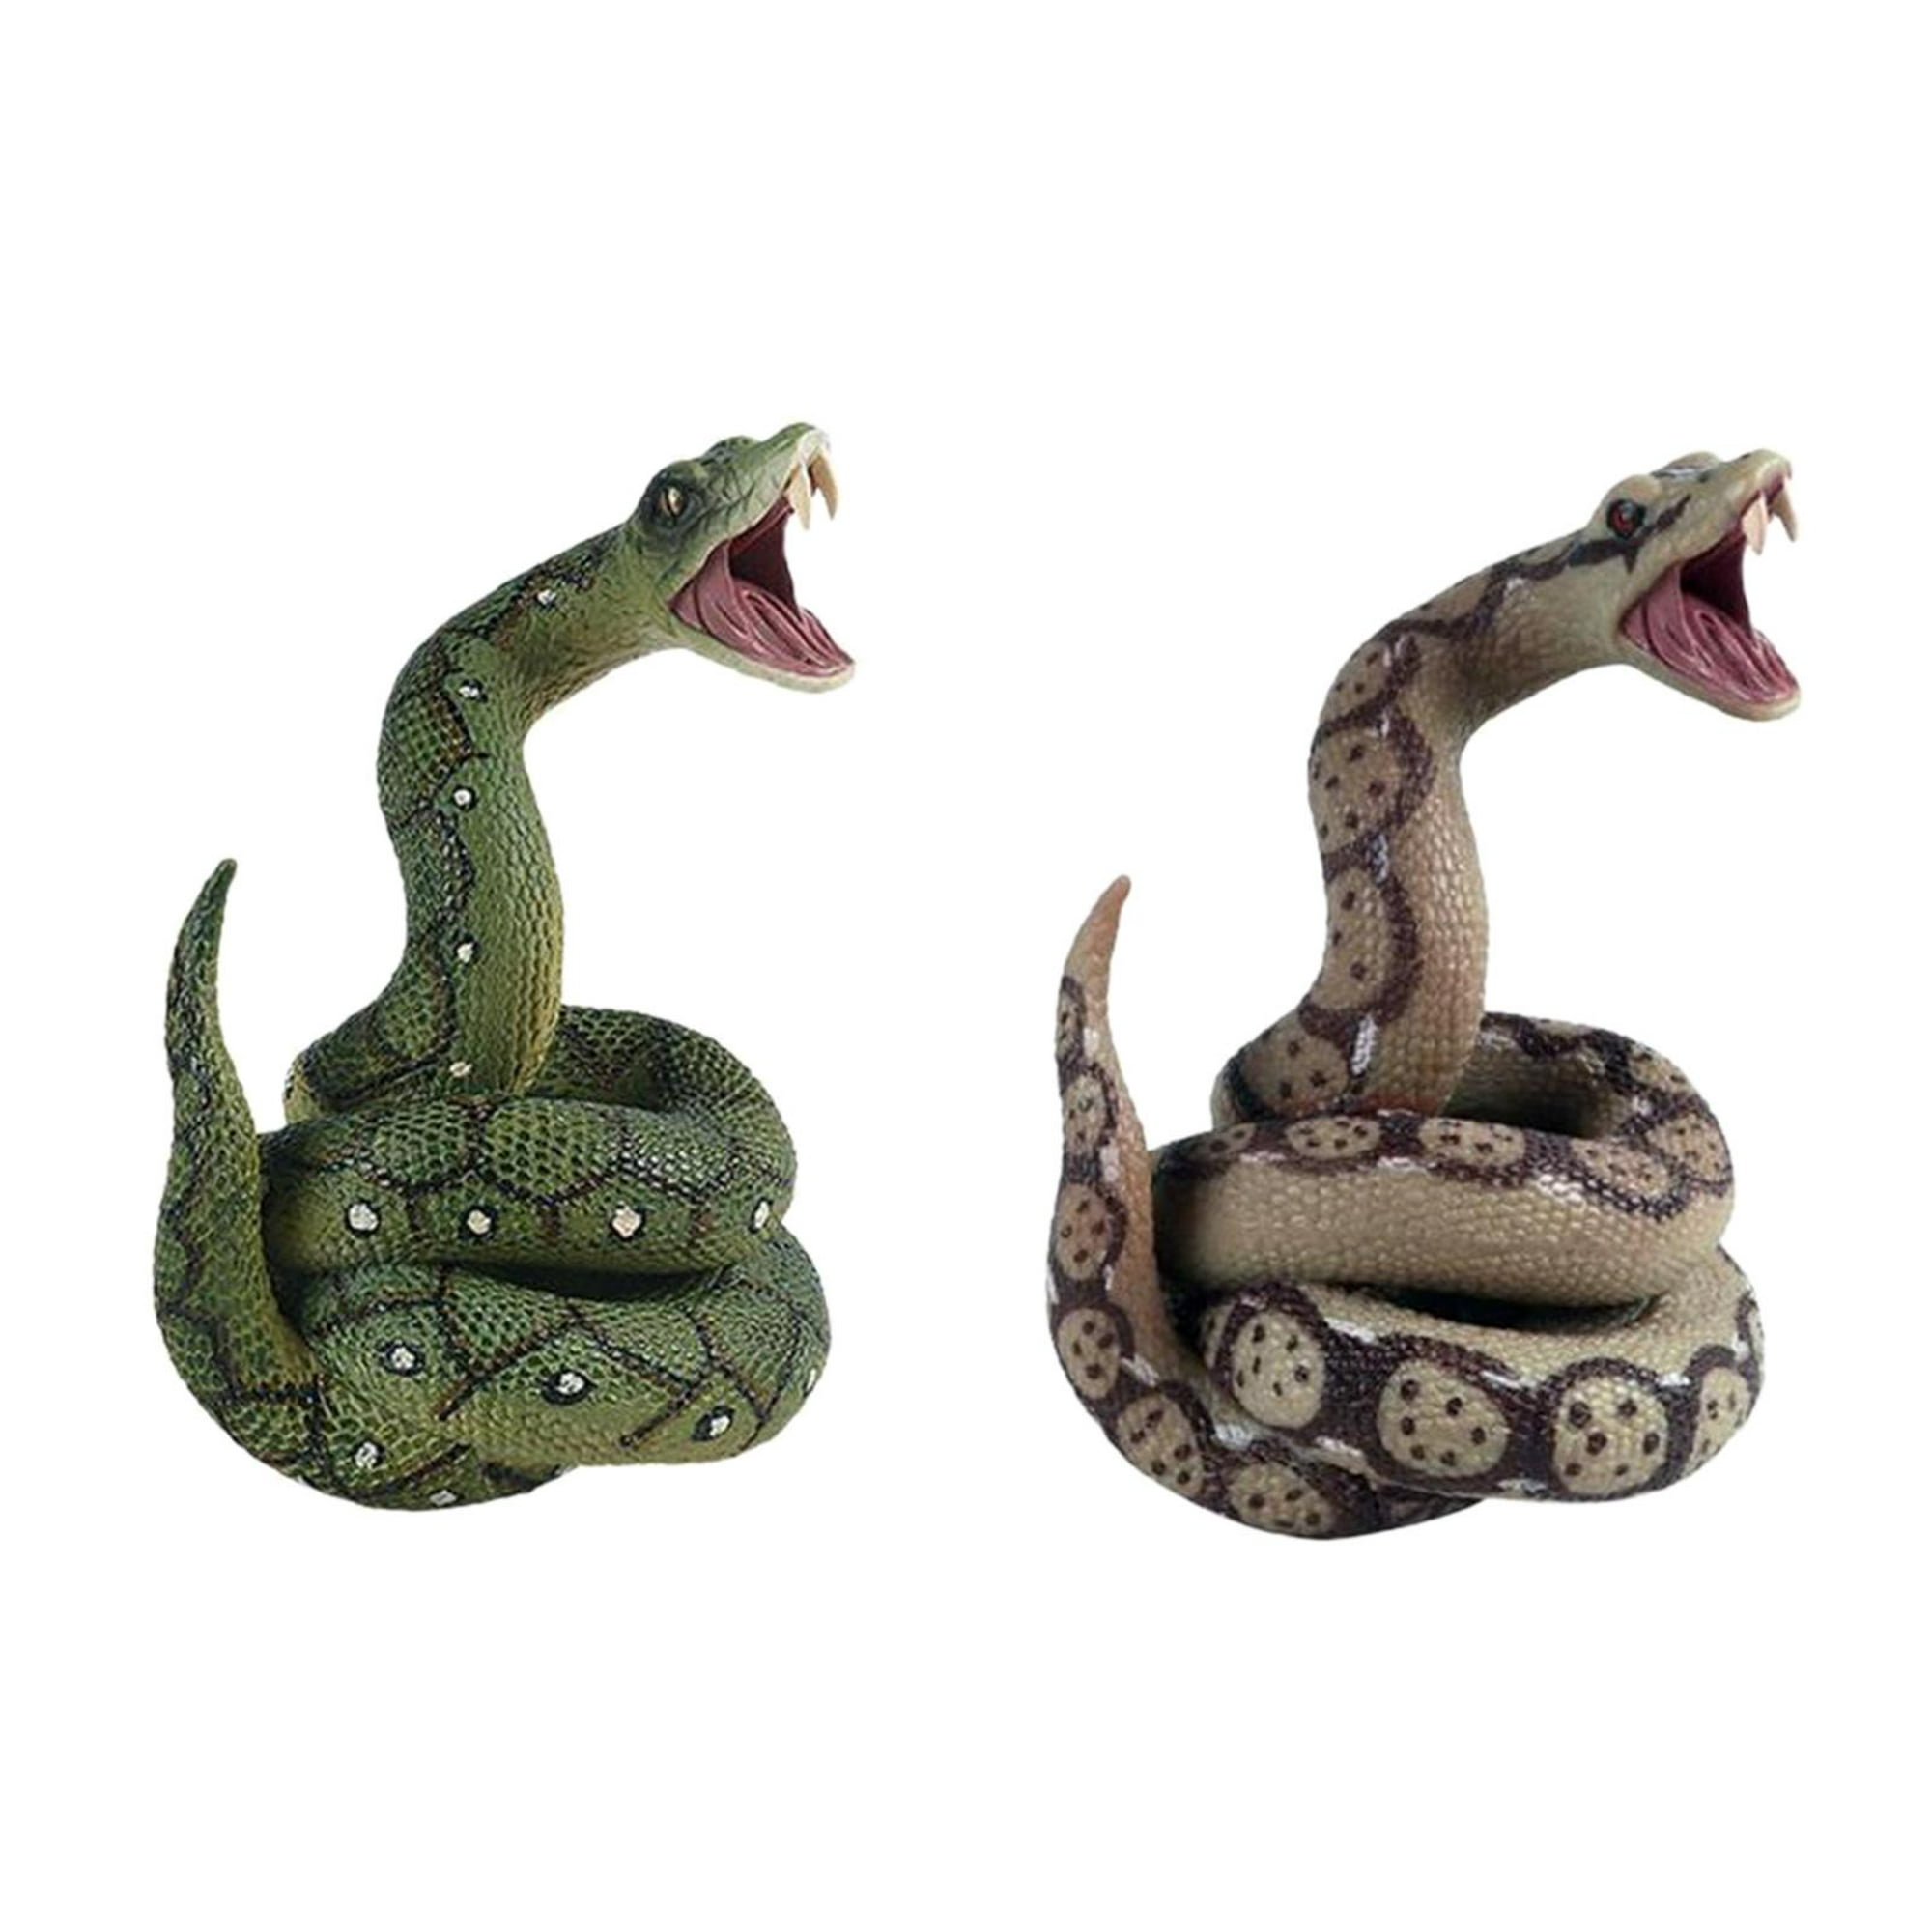 Juguete modelo de serpiente , juguete de serpiente aterrador, accesorios de  serpiente, figura de serpiente, figura de serpiente artificial Verde Colco  Juguetes de serpiente de simulación